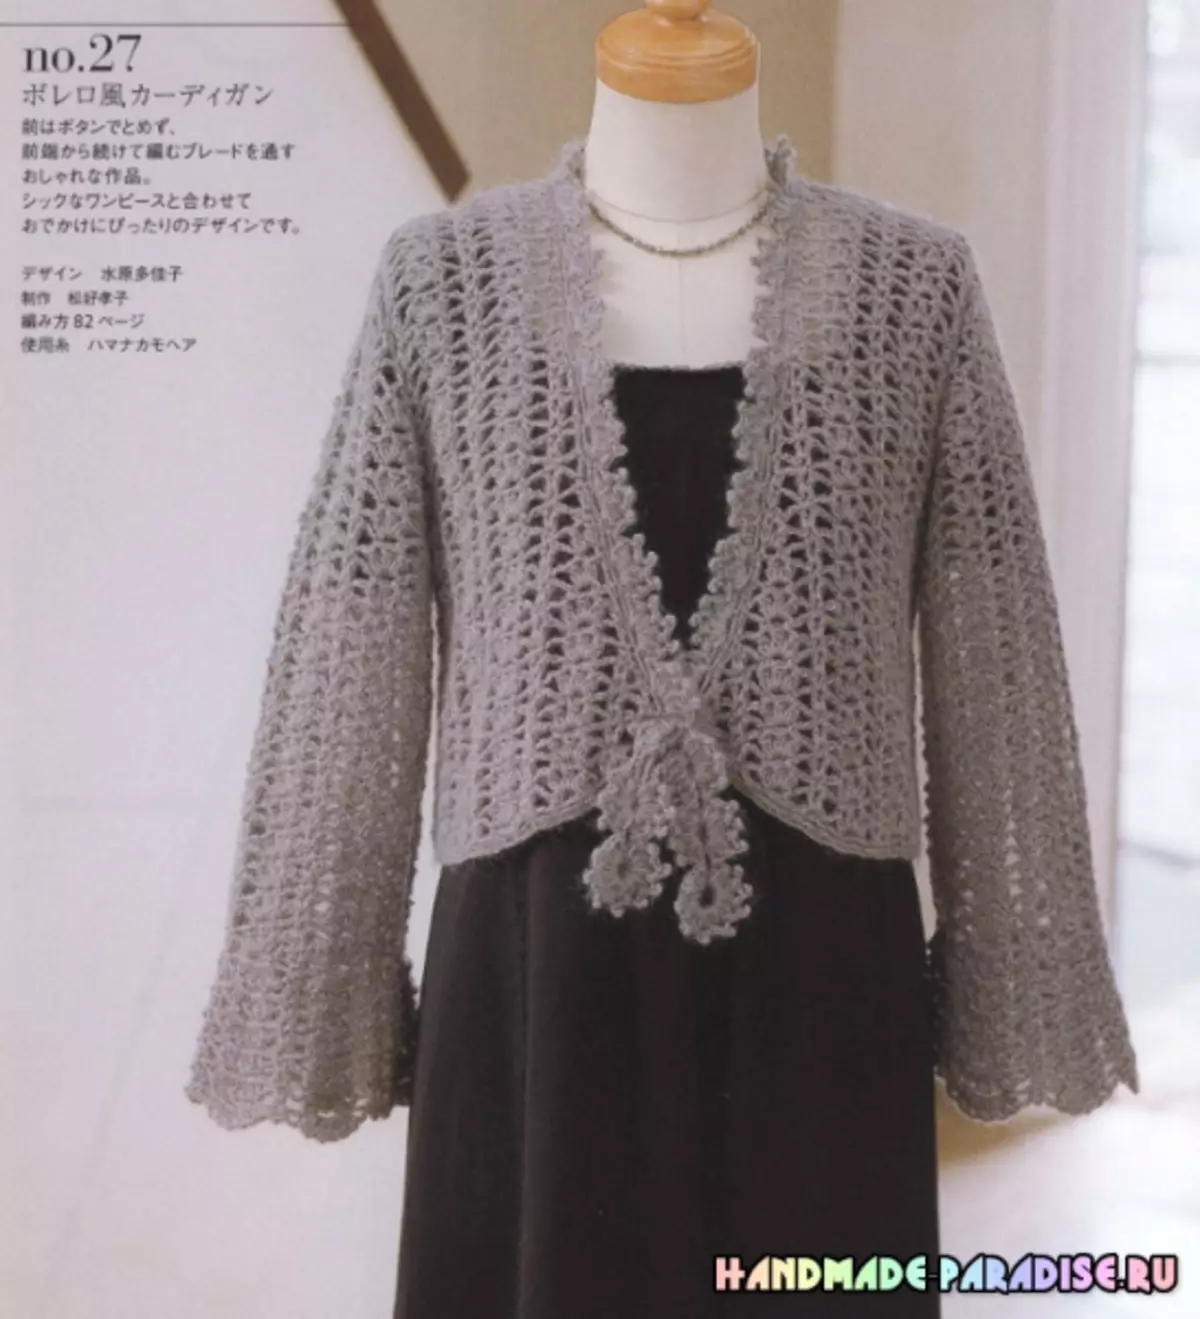 Móc đan sành điệu. Tạp chí Nhật Bản với các chương trình